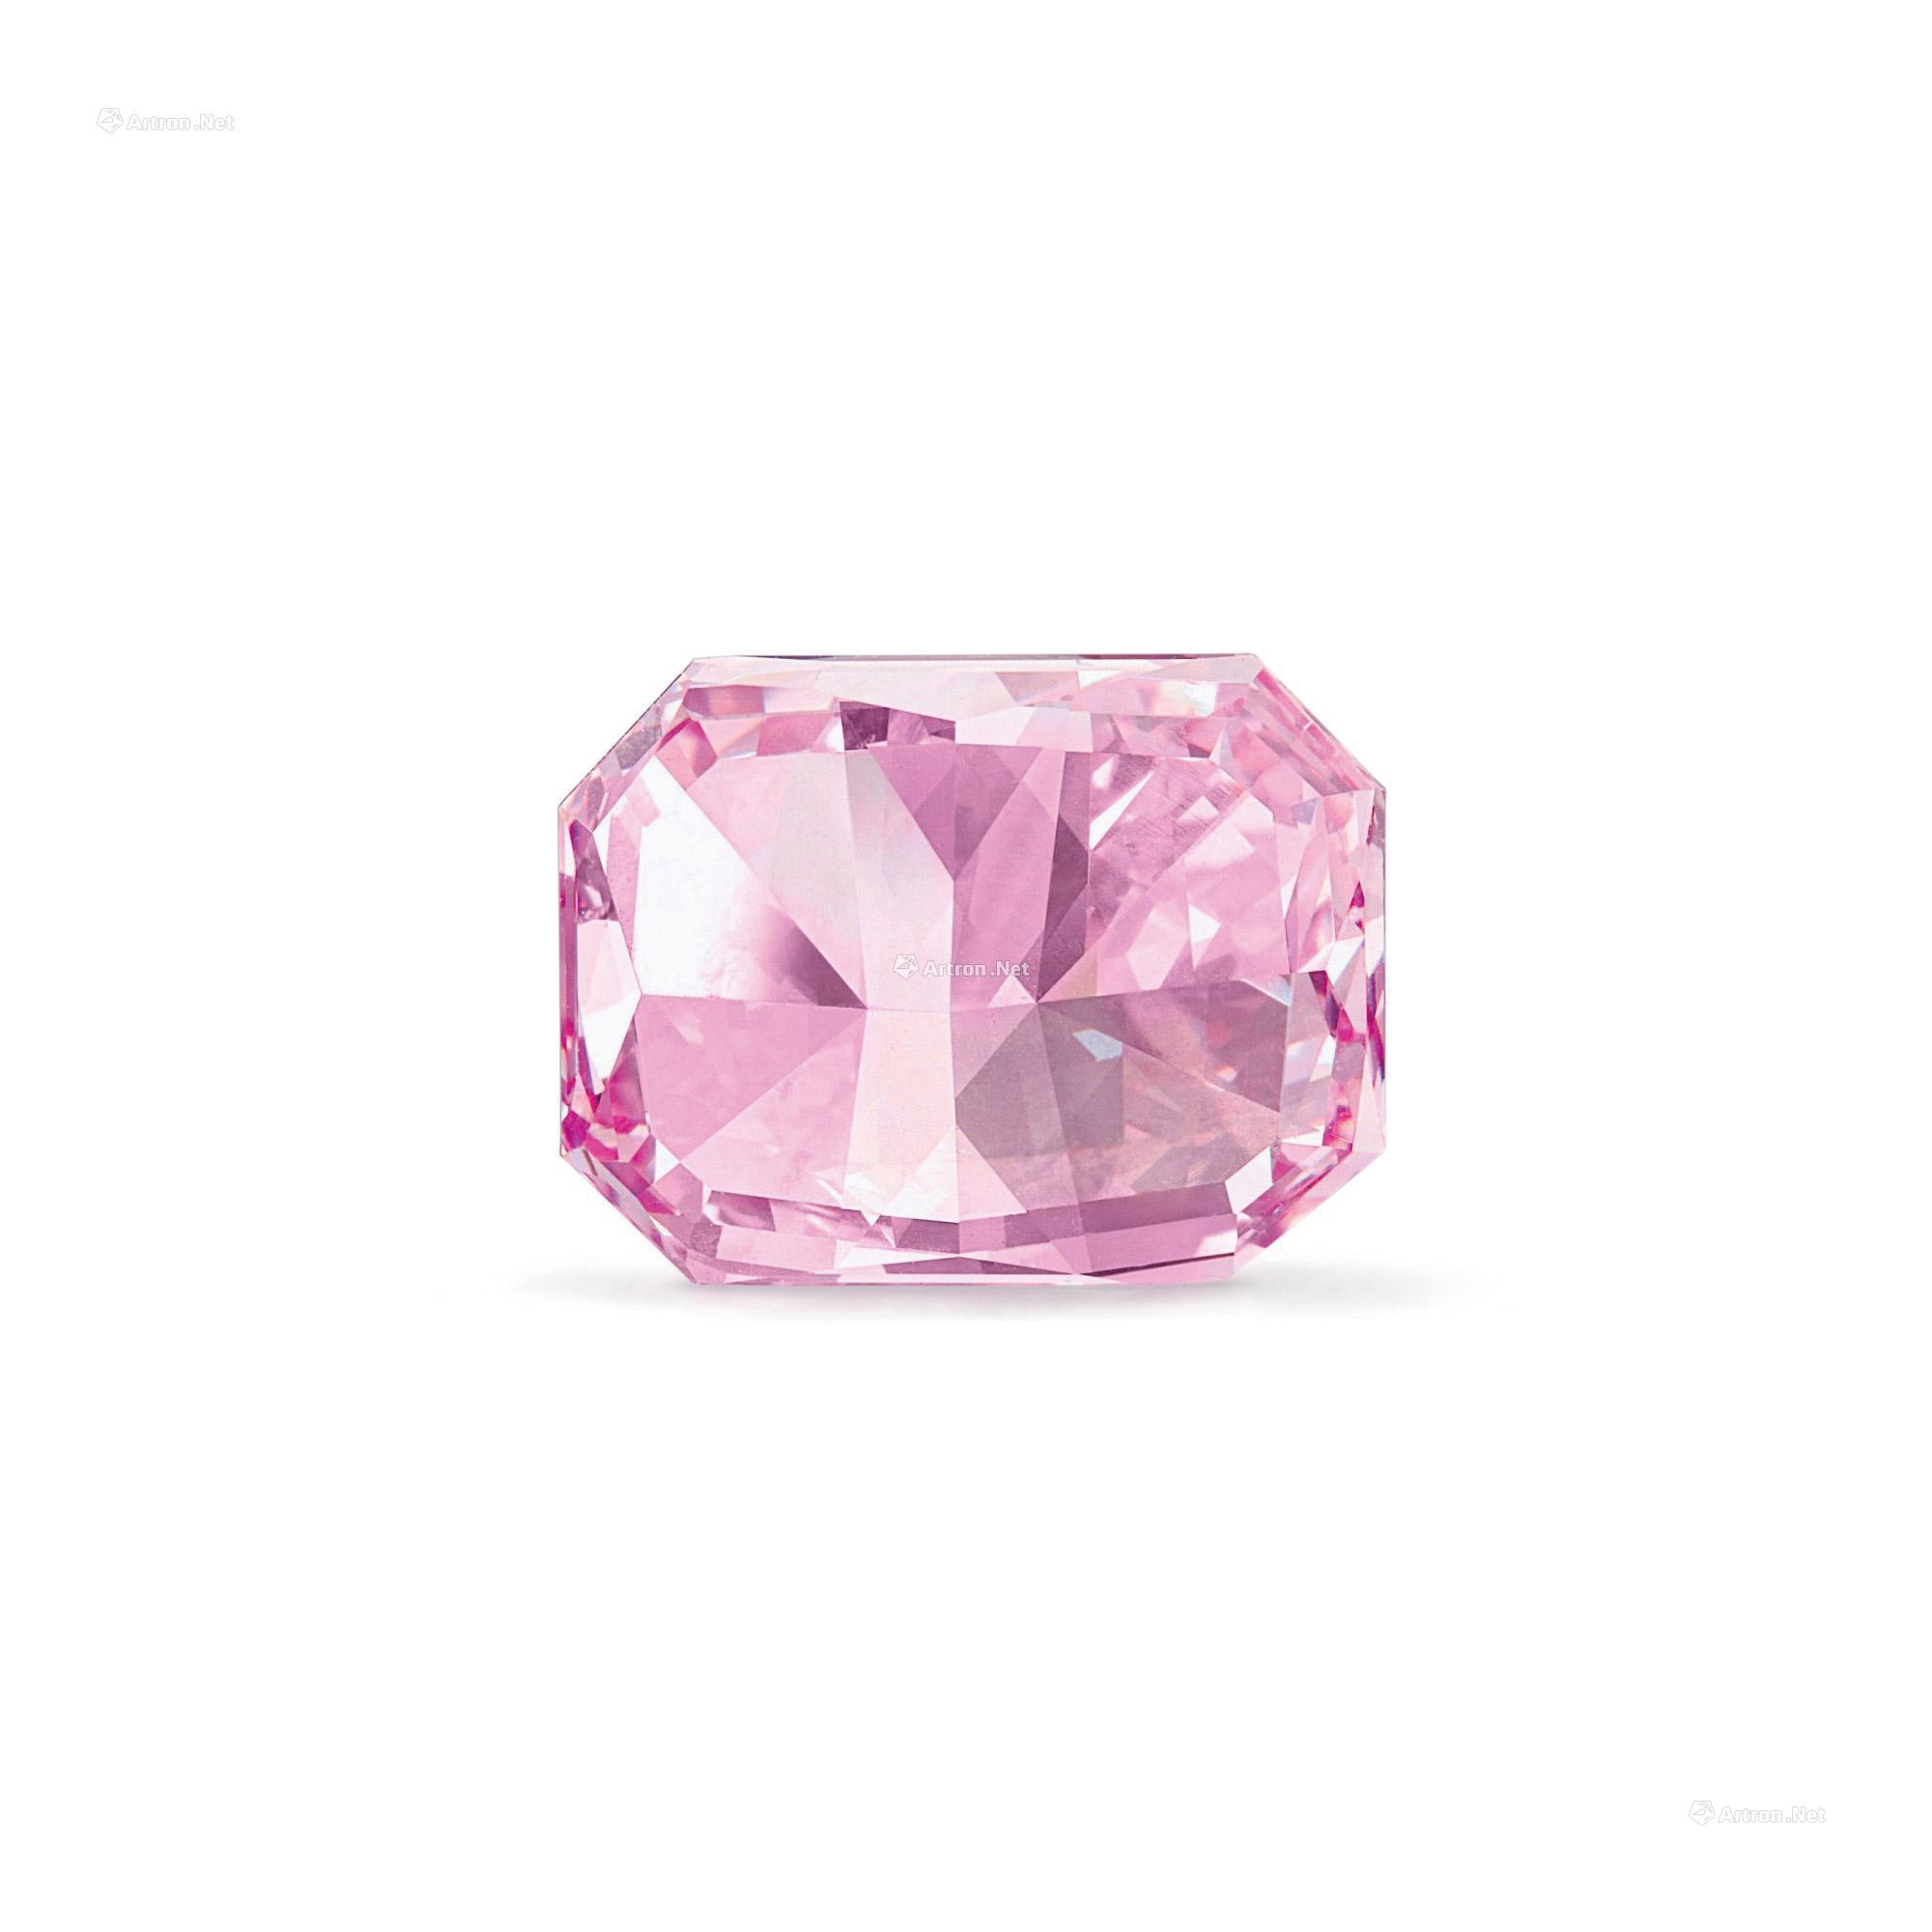 重达170克拉 300年来最大纯净粉红钻石出土 | 安哥拉 | 新唐人电视台